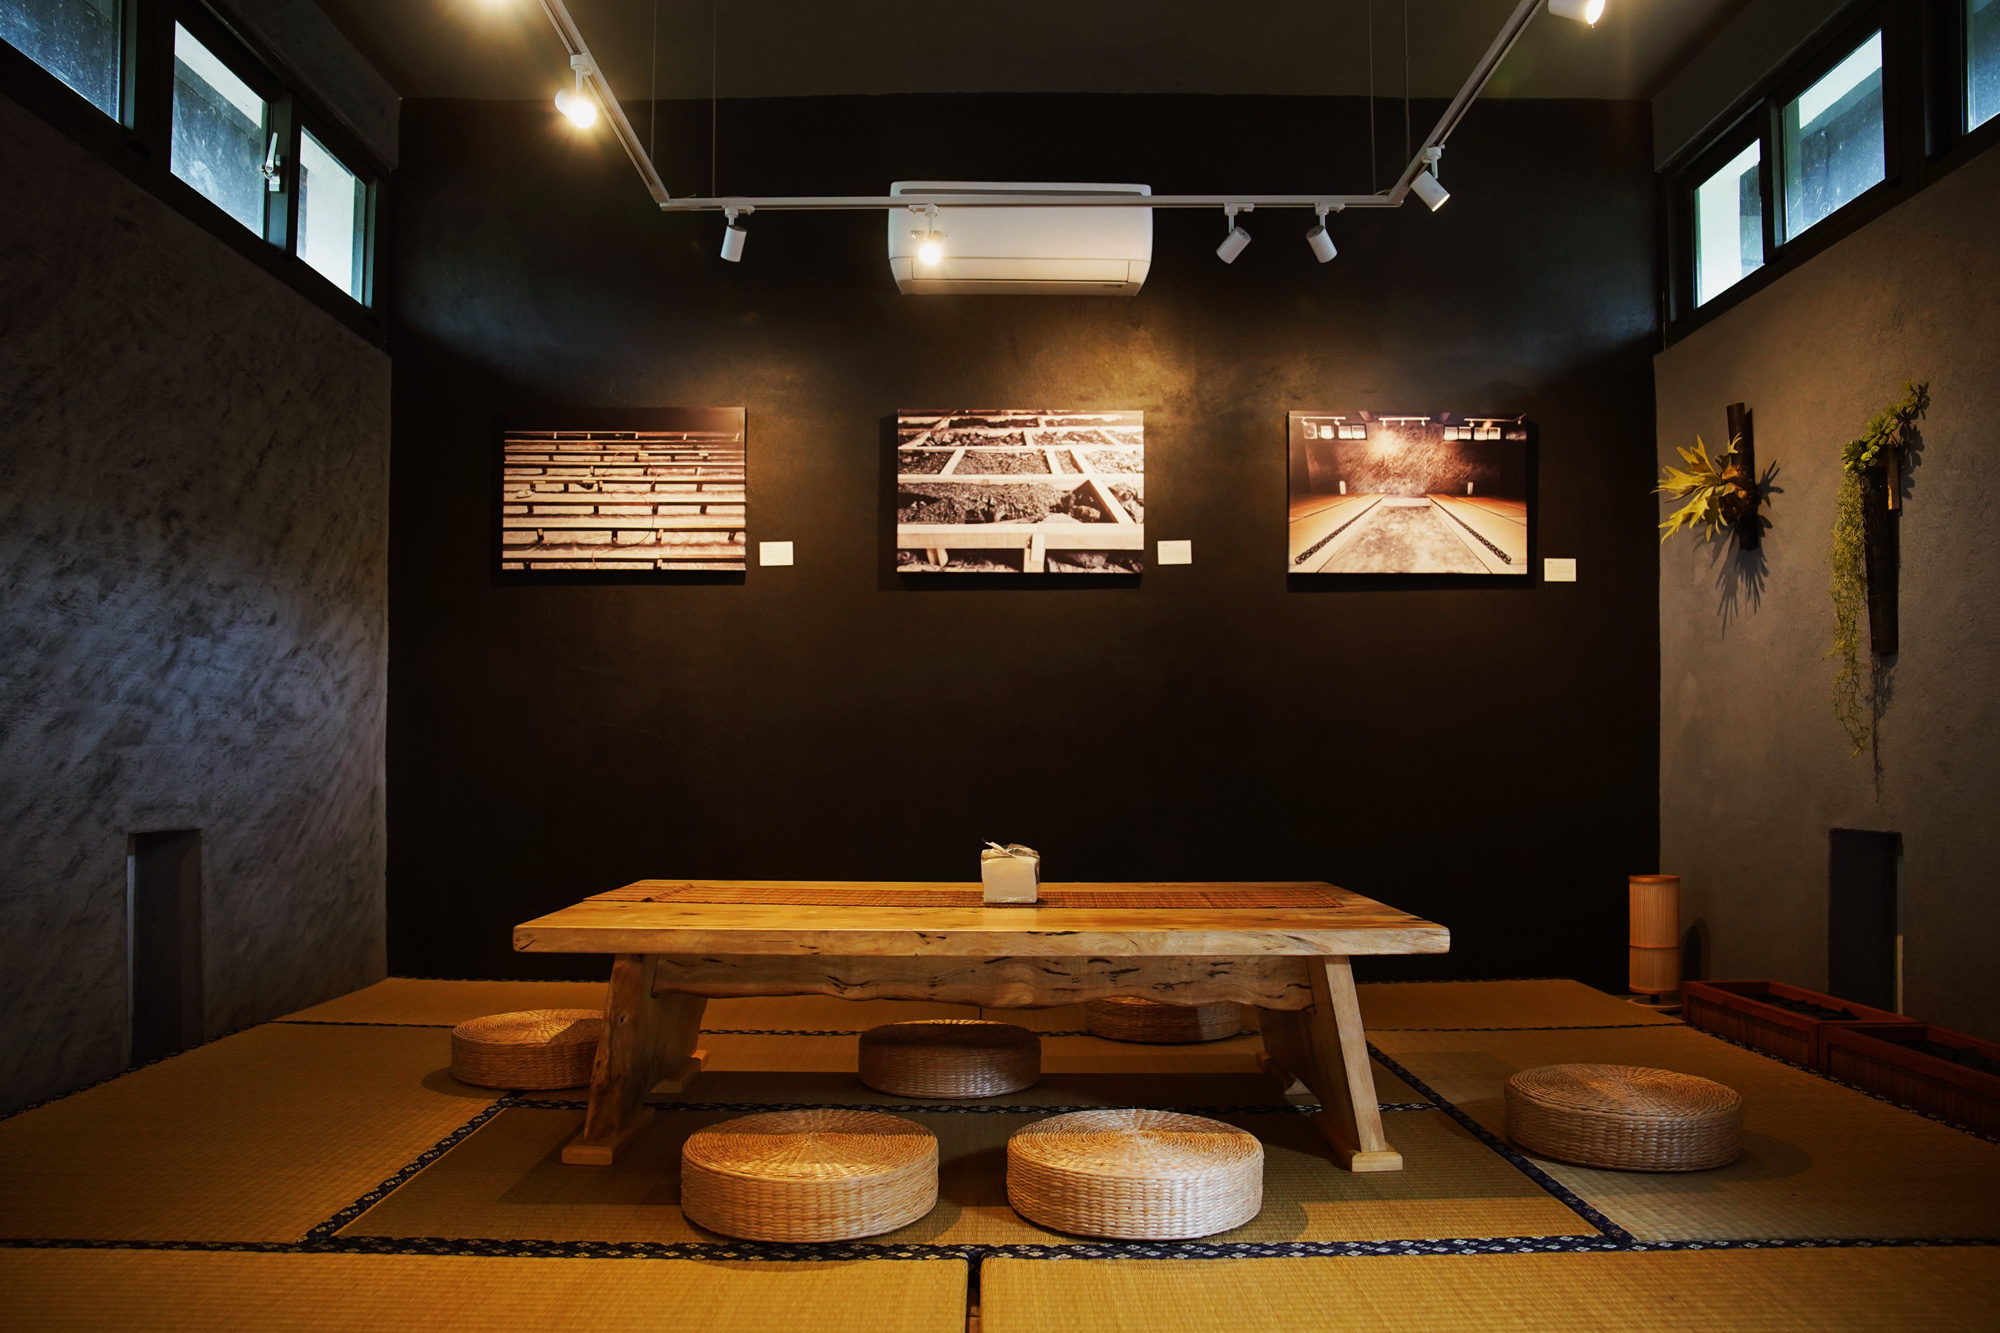 墨竹茶間（馥茶堂）榻榻米下方置放大量竹木炭，有自動淨化空氣的效果 ，竹漆牆與竹炭植栽陳設，則營造出恬淡靜雅的氛圍。（圖片來源：竹博會提供）